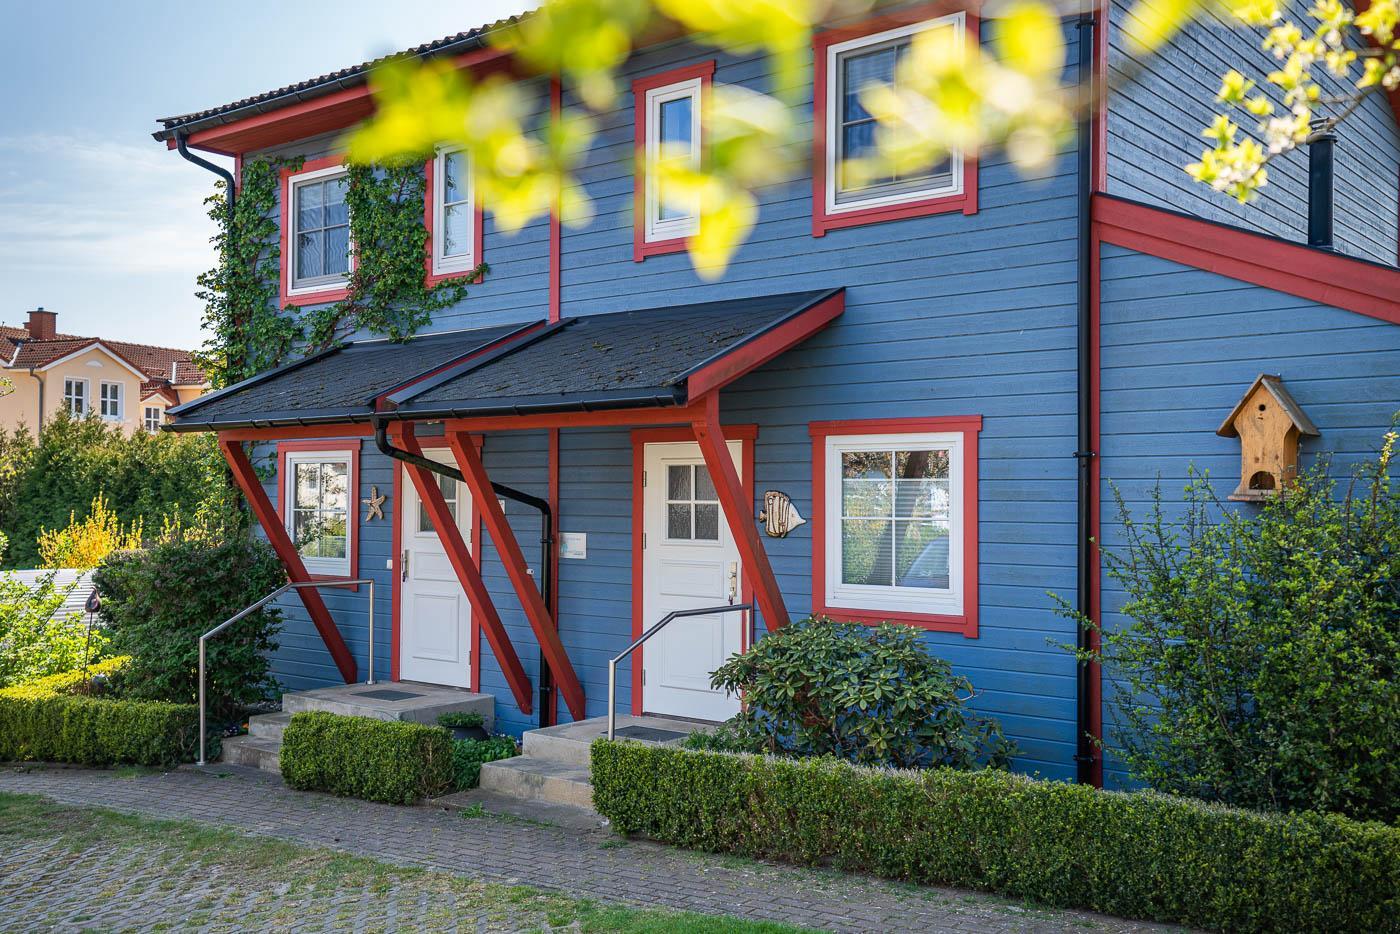 Blaues Holzhaus mit roten Fensterumrandungen. Im Vorgartenn gibt es Hecken und Sträucher.